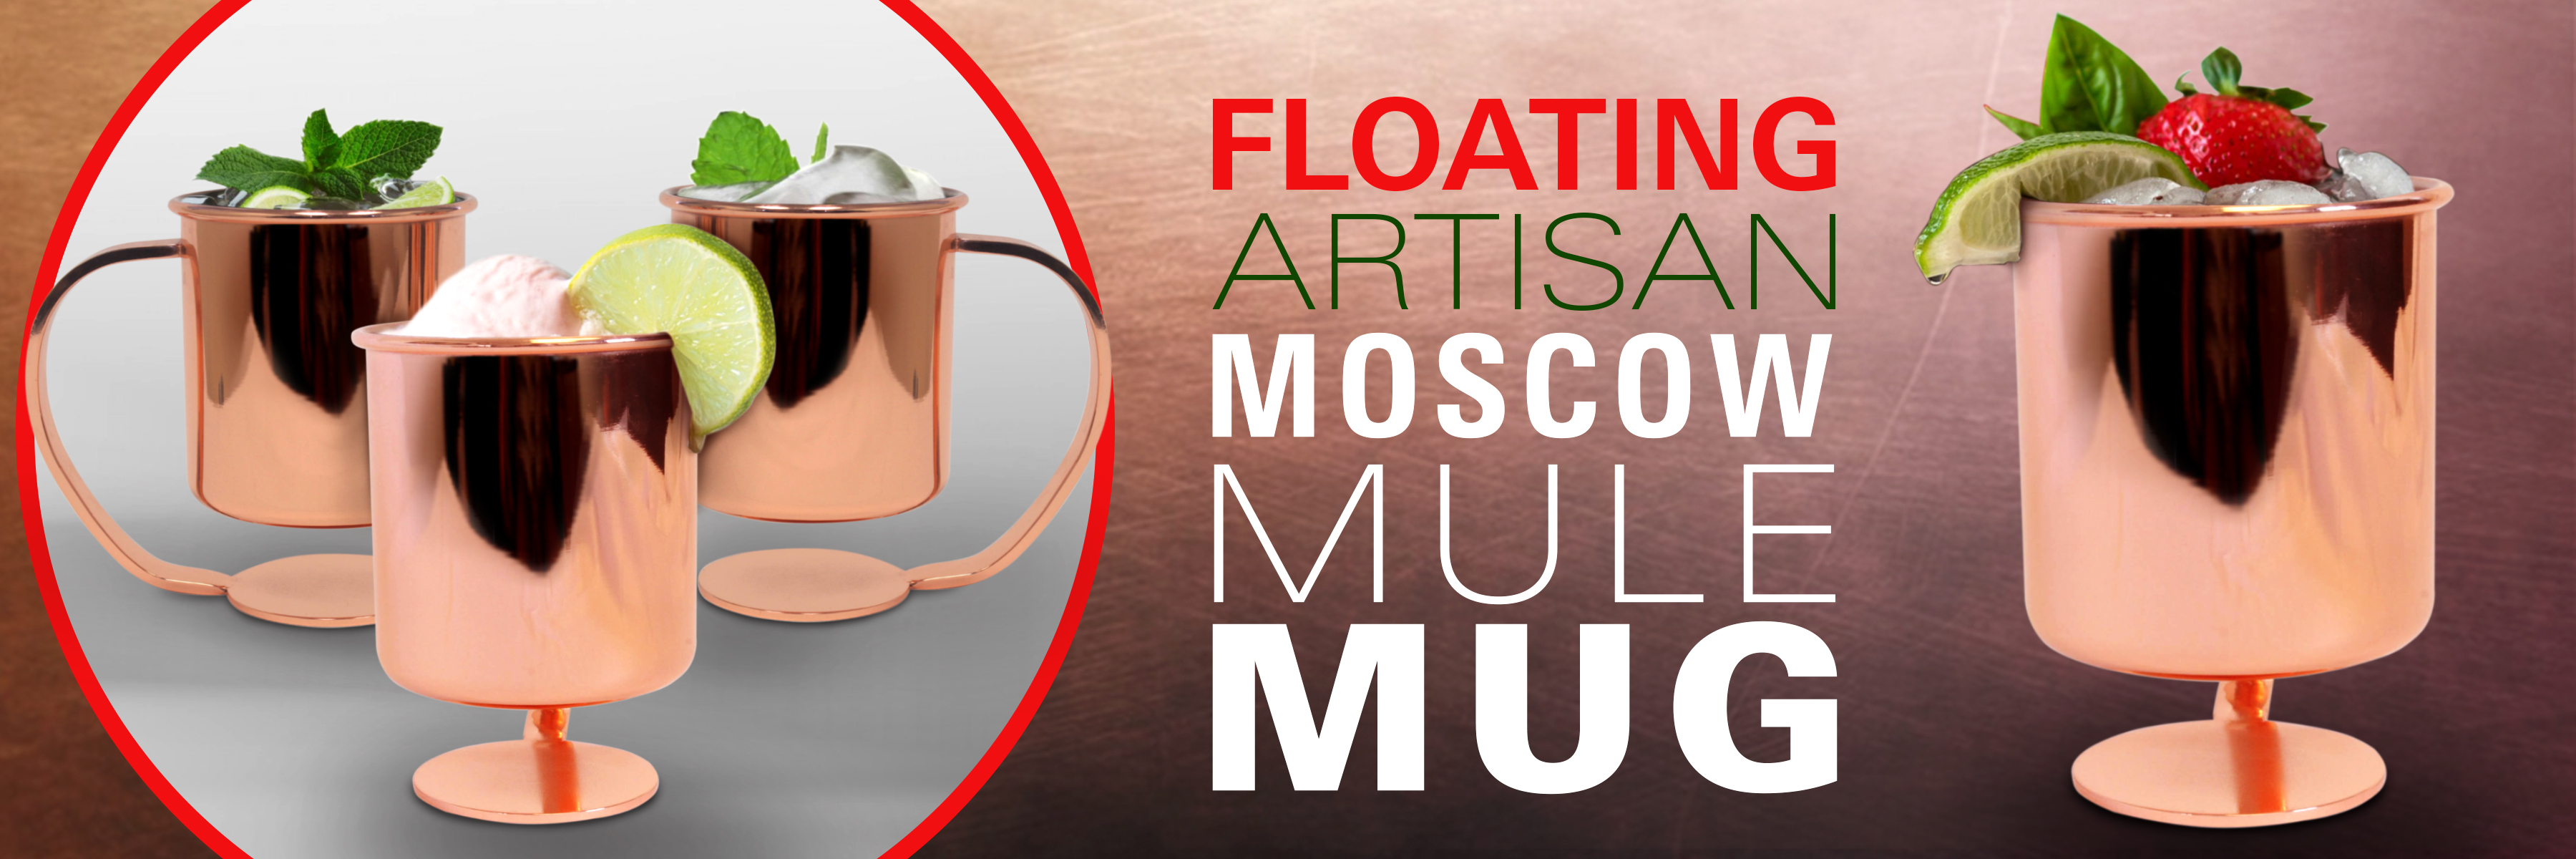 floating moscow mule mug artisan